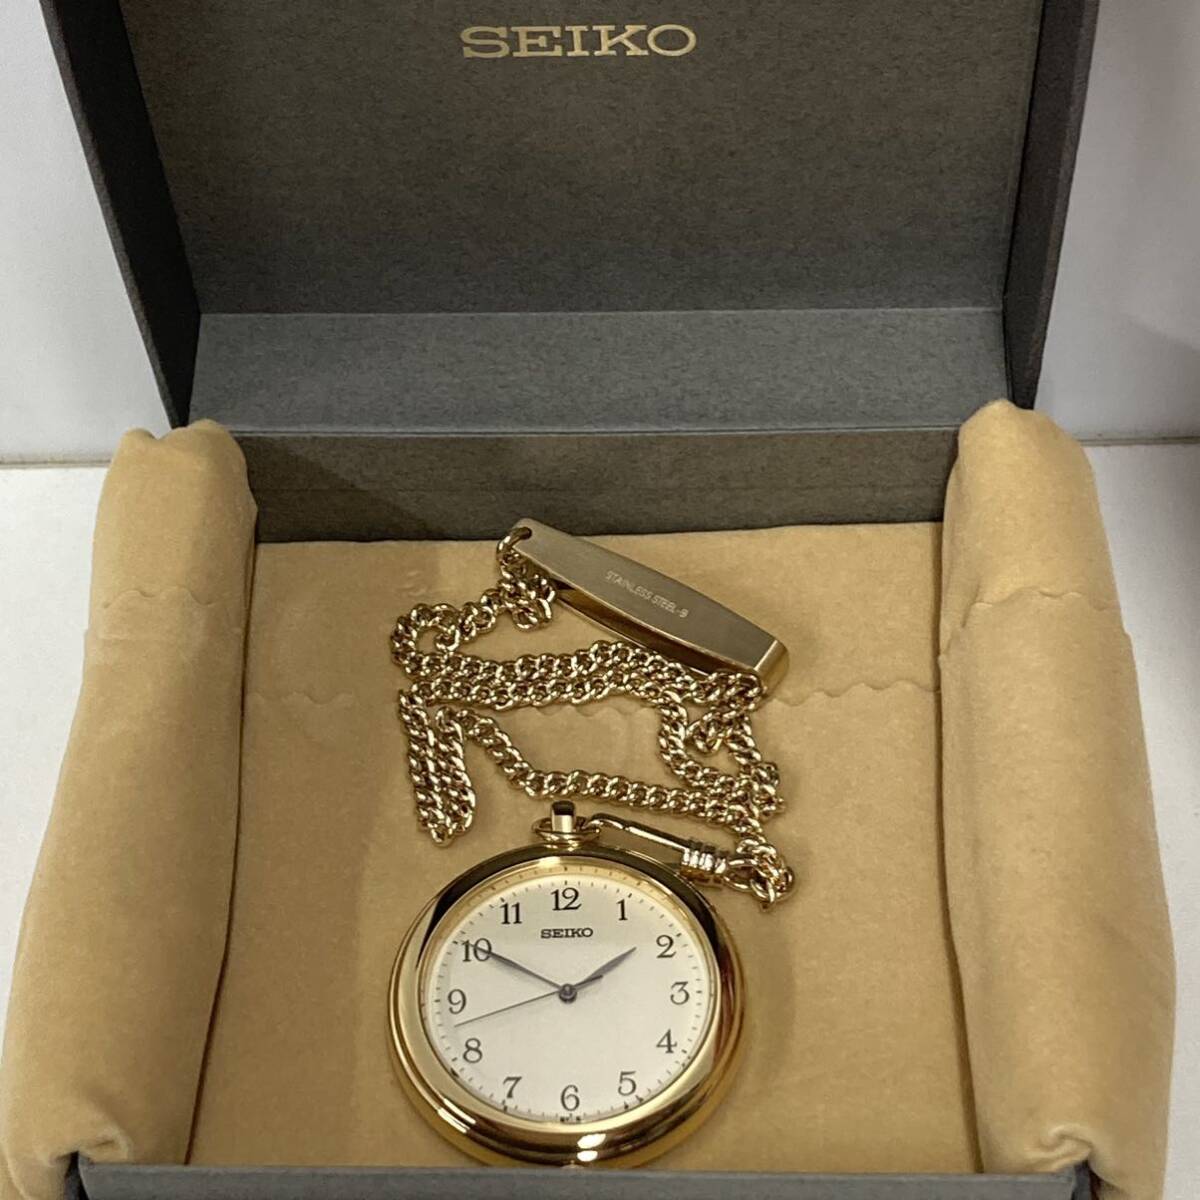 SEIKO карманные часы кварц 7N01-9A00 работоспособность не проверялась 